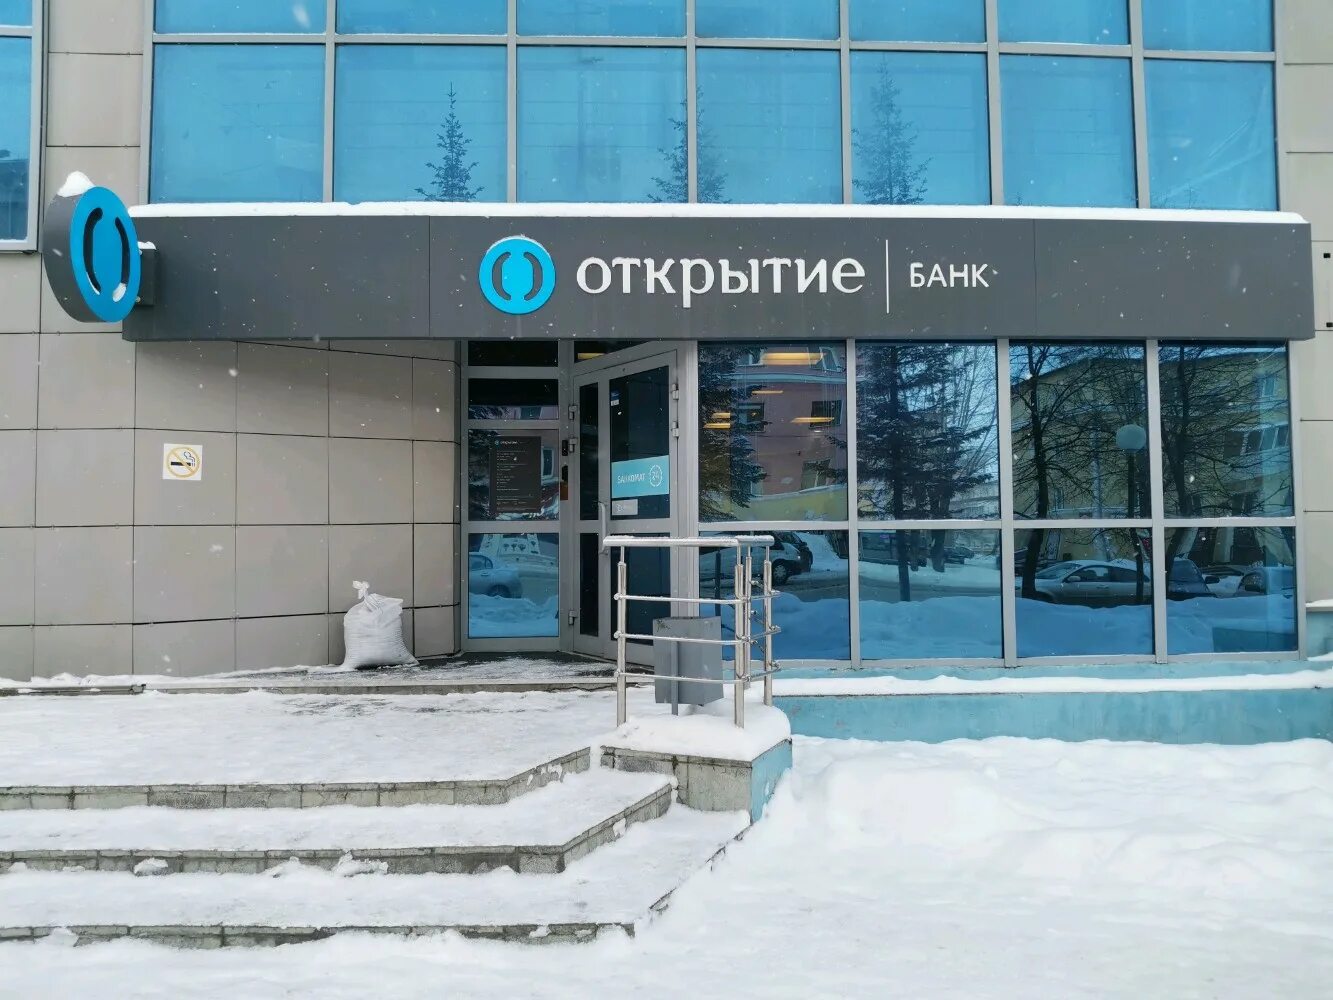 Тел банка открытие. Банк открытие на улице Титова Новосибирск. Титова 29 Новосибирск банк открытие. Банк открытие на Титова 1 Новосибирск. Титова 1 открытие банк.